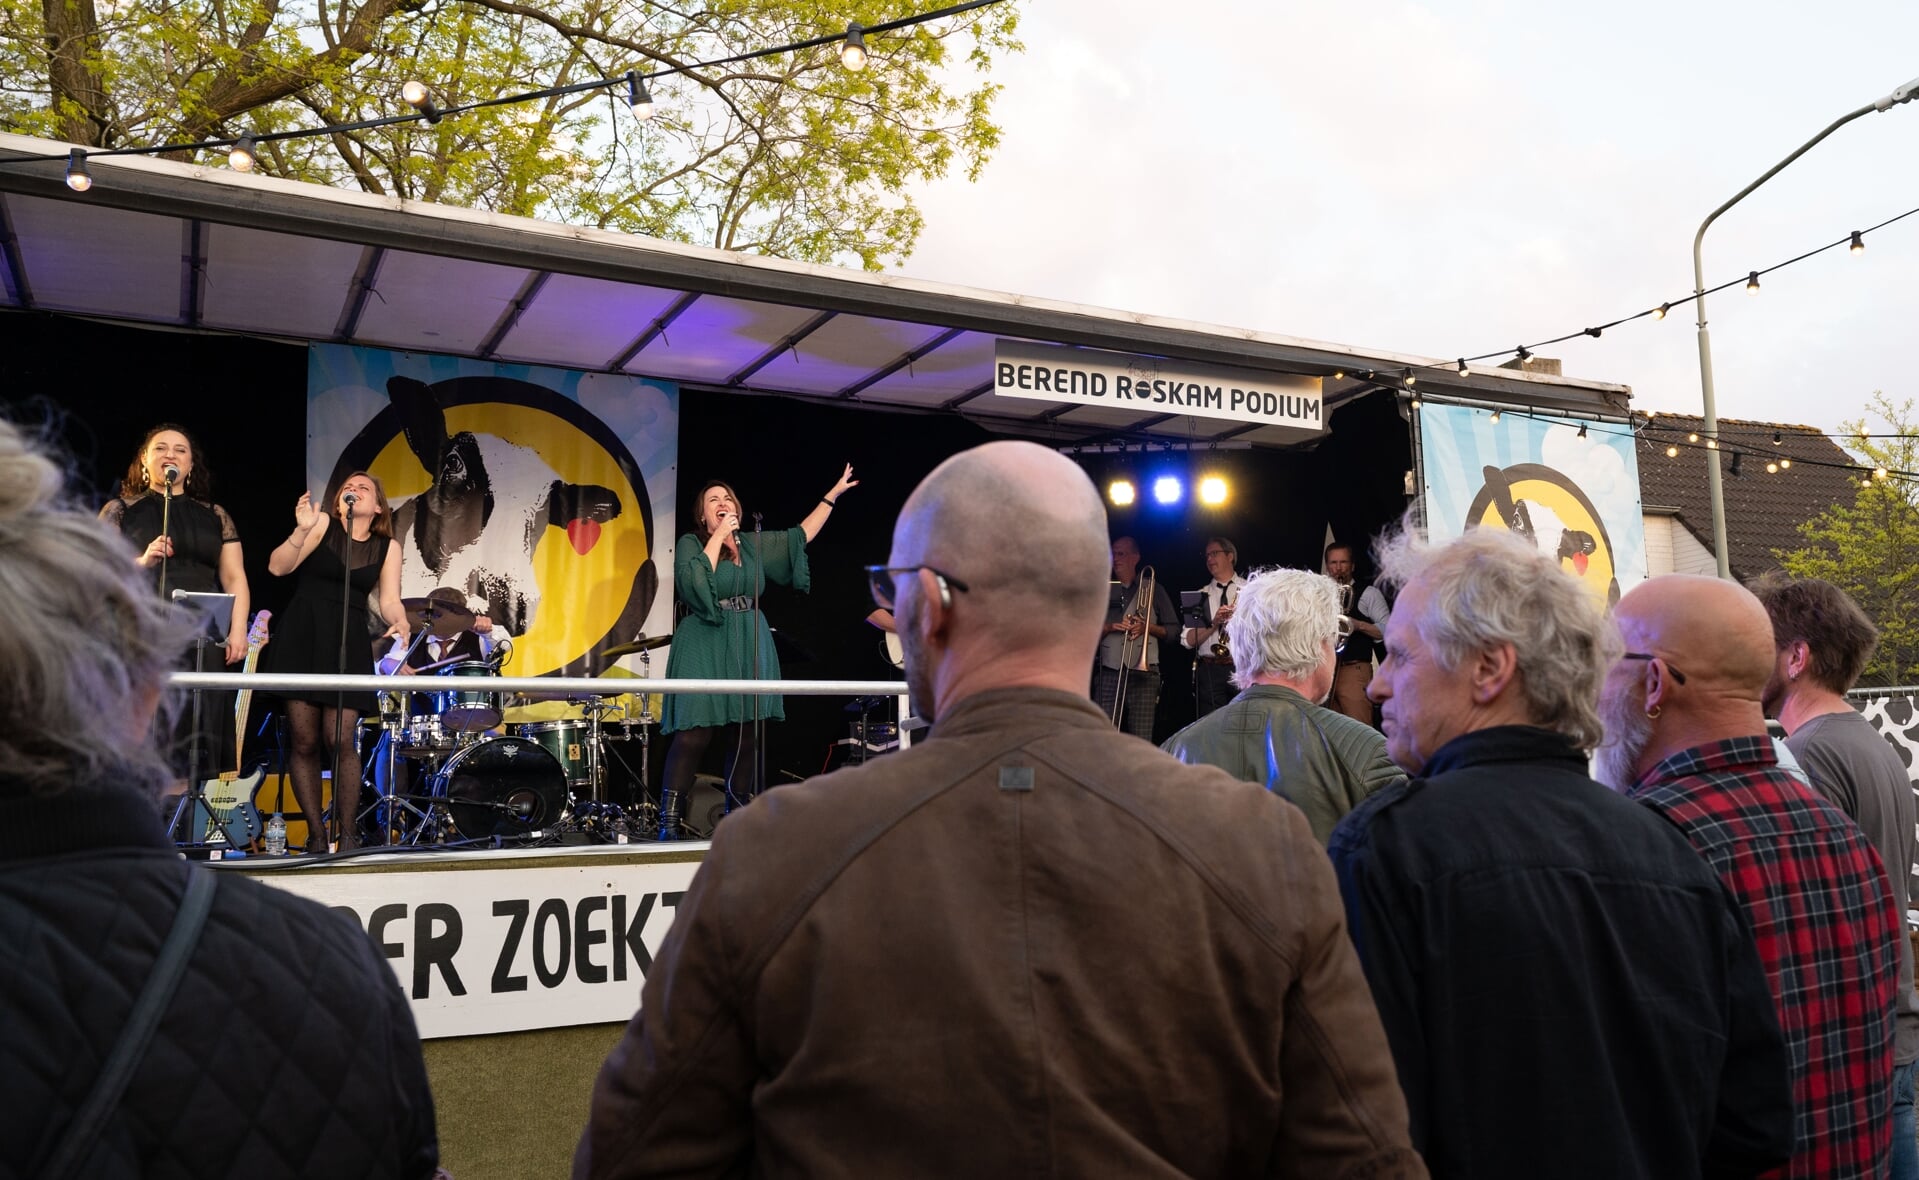 De laatste editie van Boer zoekt Band bij café Den Boer was een groot succes. Veel muziekliefhebbers kwamen genieten van de diverse bands op de twee podia, maar vonden het ook jammer dat het festival stopt.